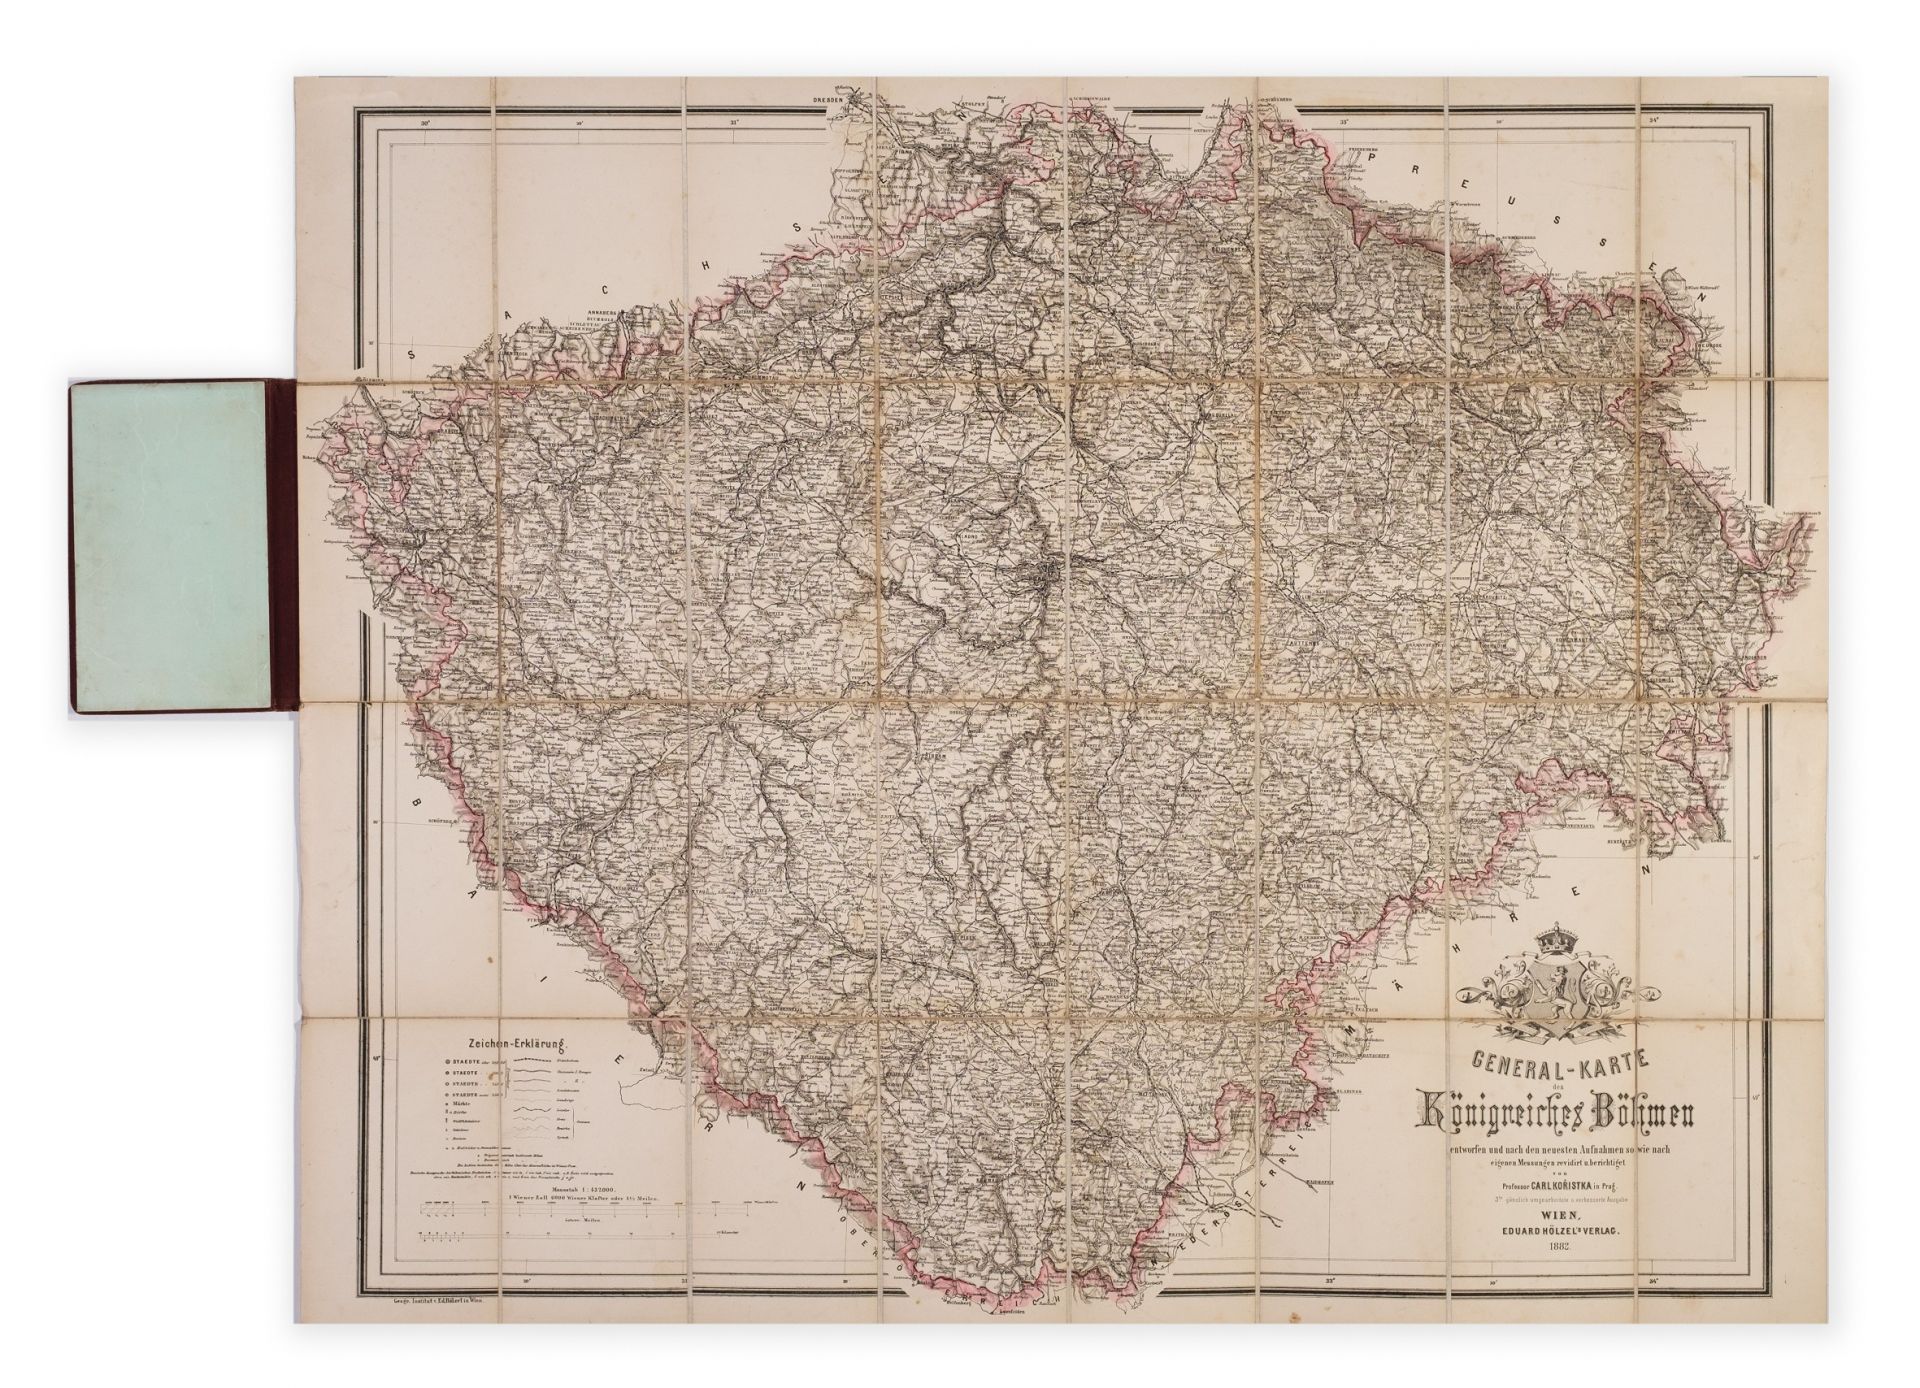 KORISTKA, Carl. General-Karte des Knigreiches Bhmen entworfen und nach den neuesten Aufnahmen sowie nach eigenen Messungen revidirt und berichtigt.